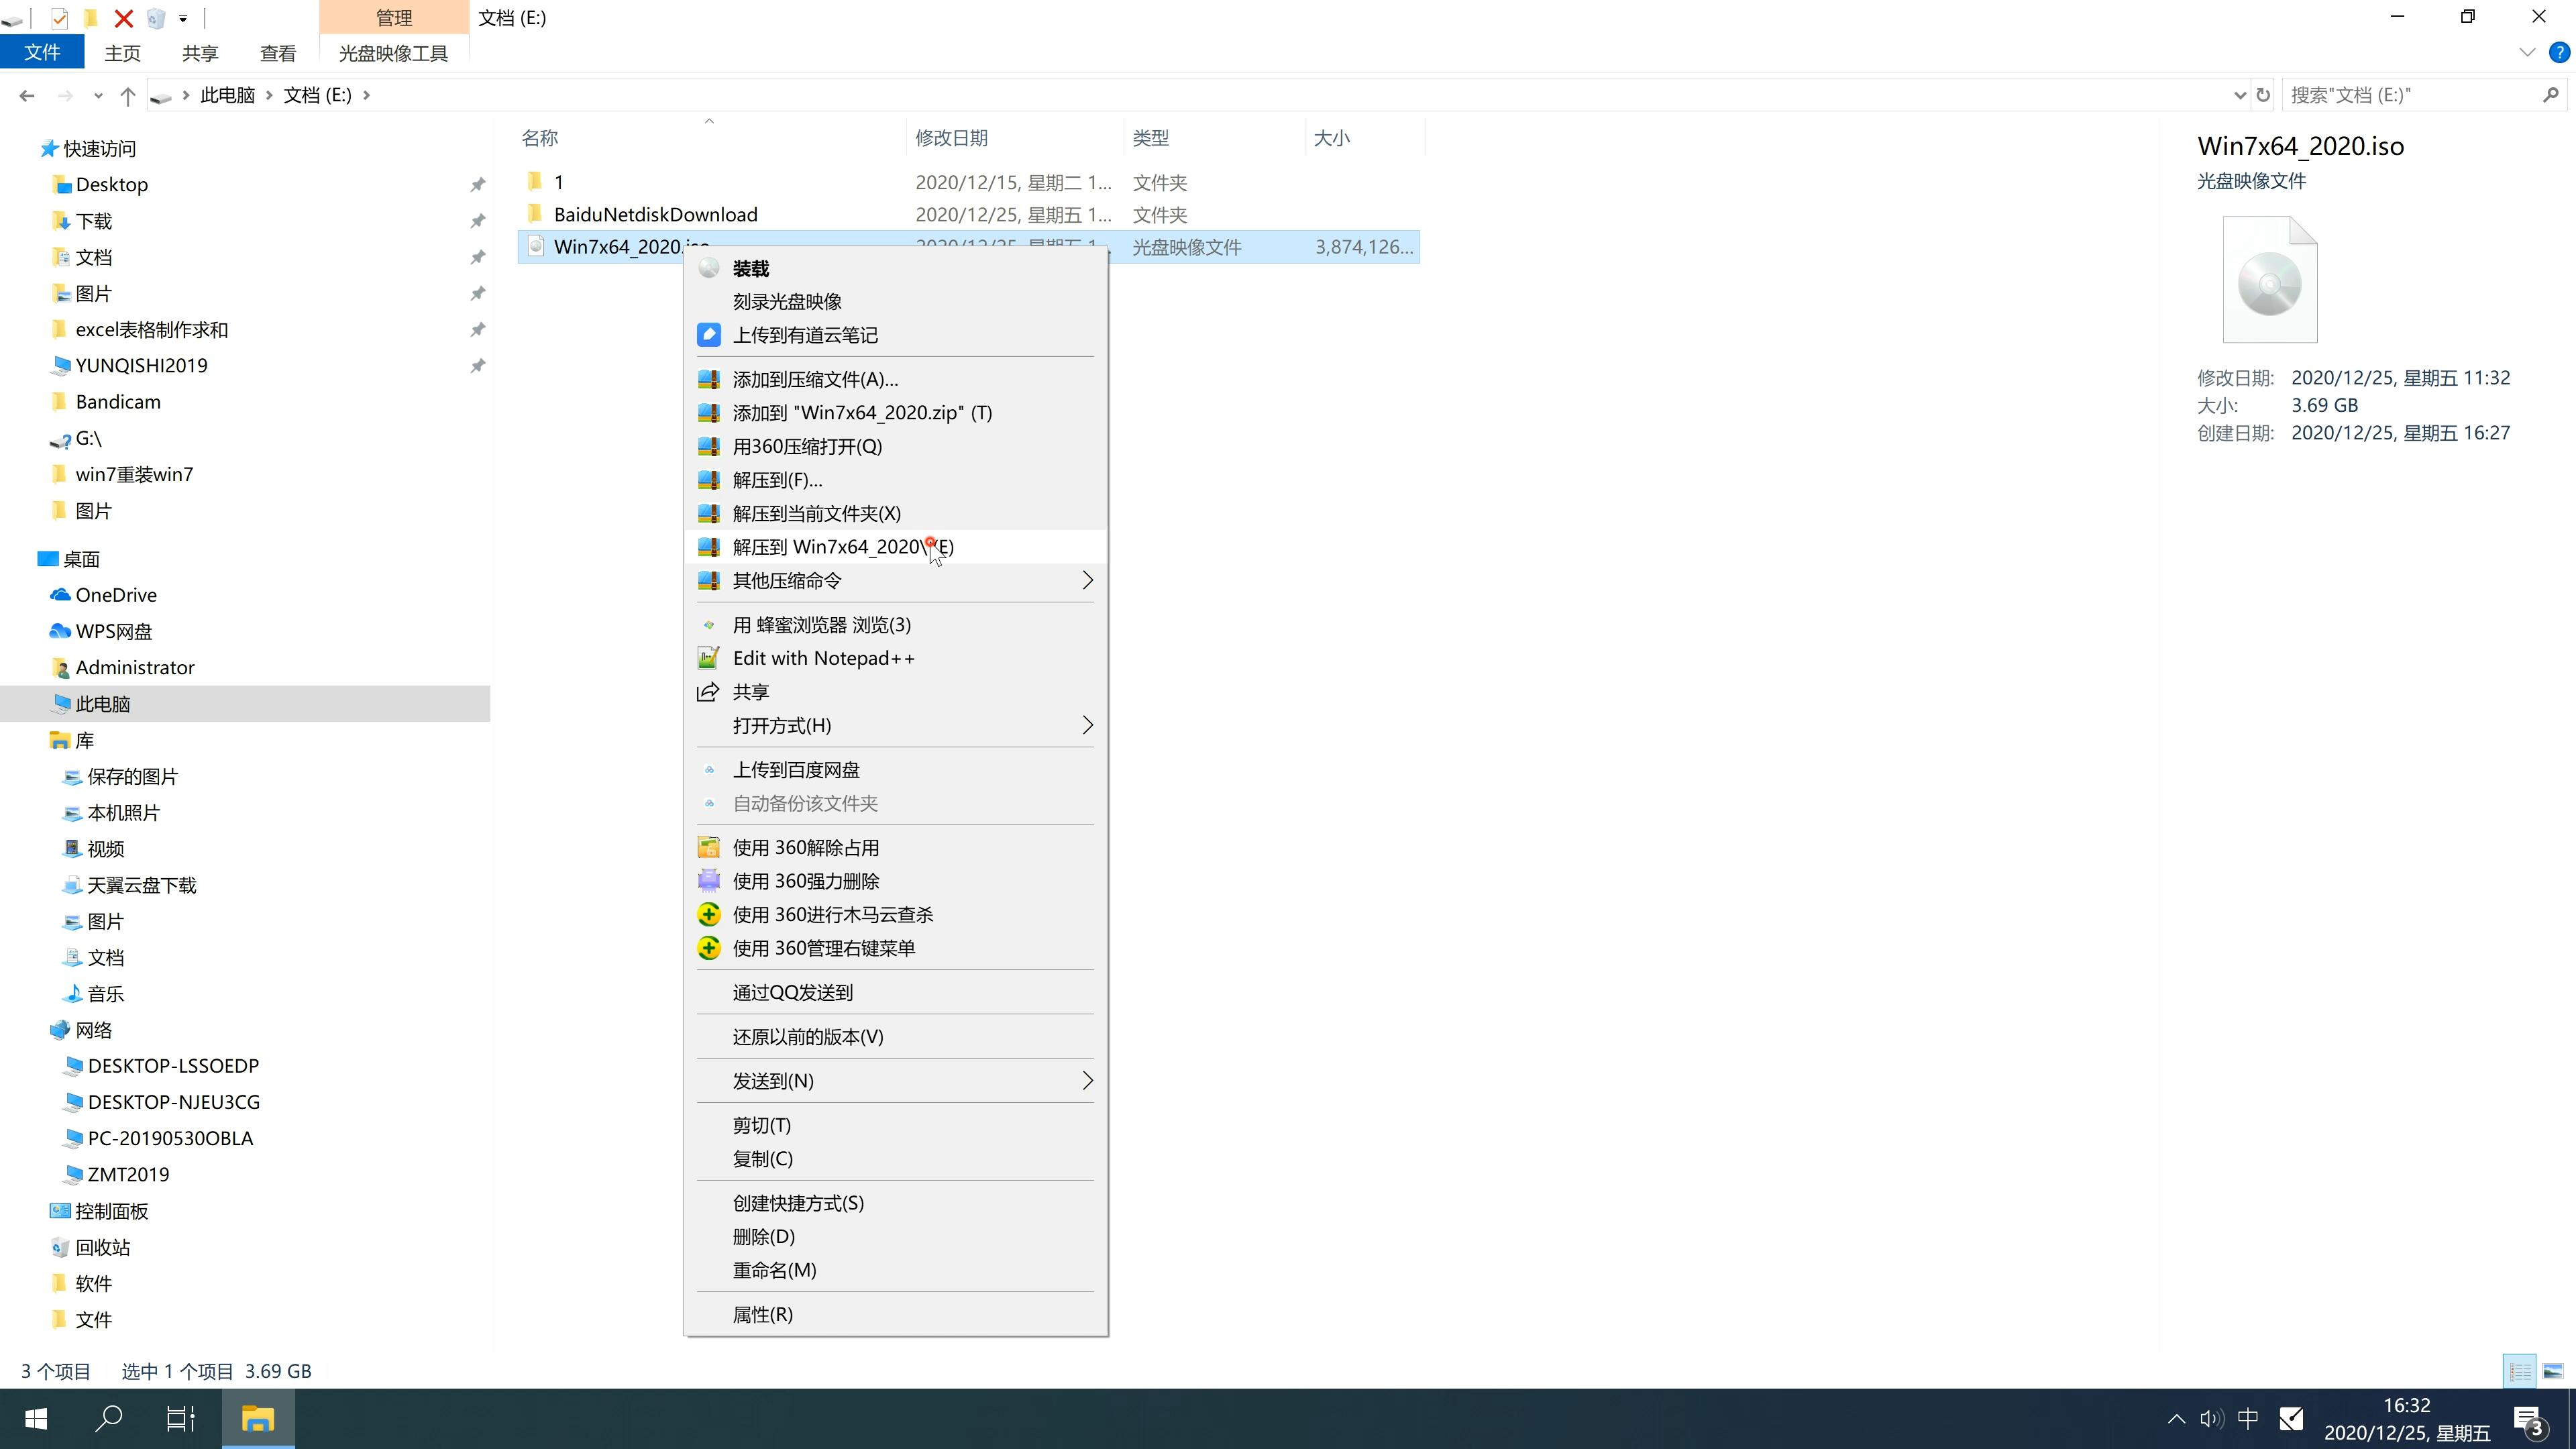 新版笔记本专用系统 GHOST Win10 64 SP1 安全绿色版 V2021.01(2)